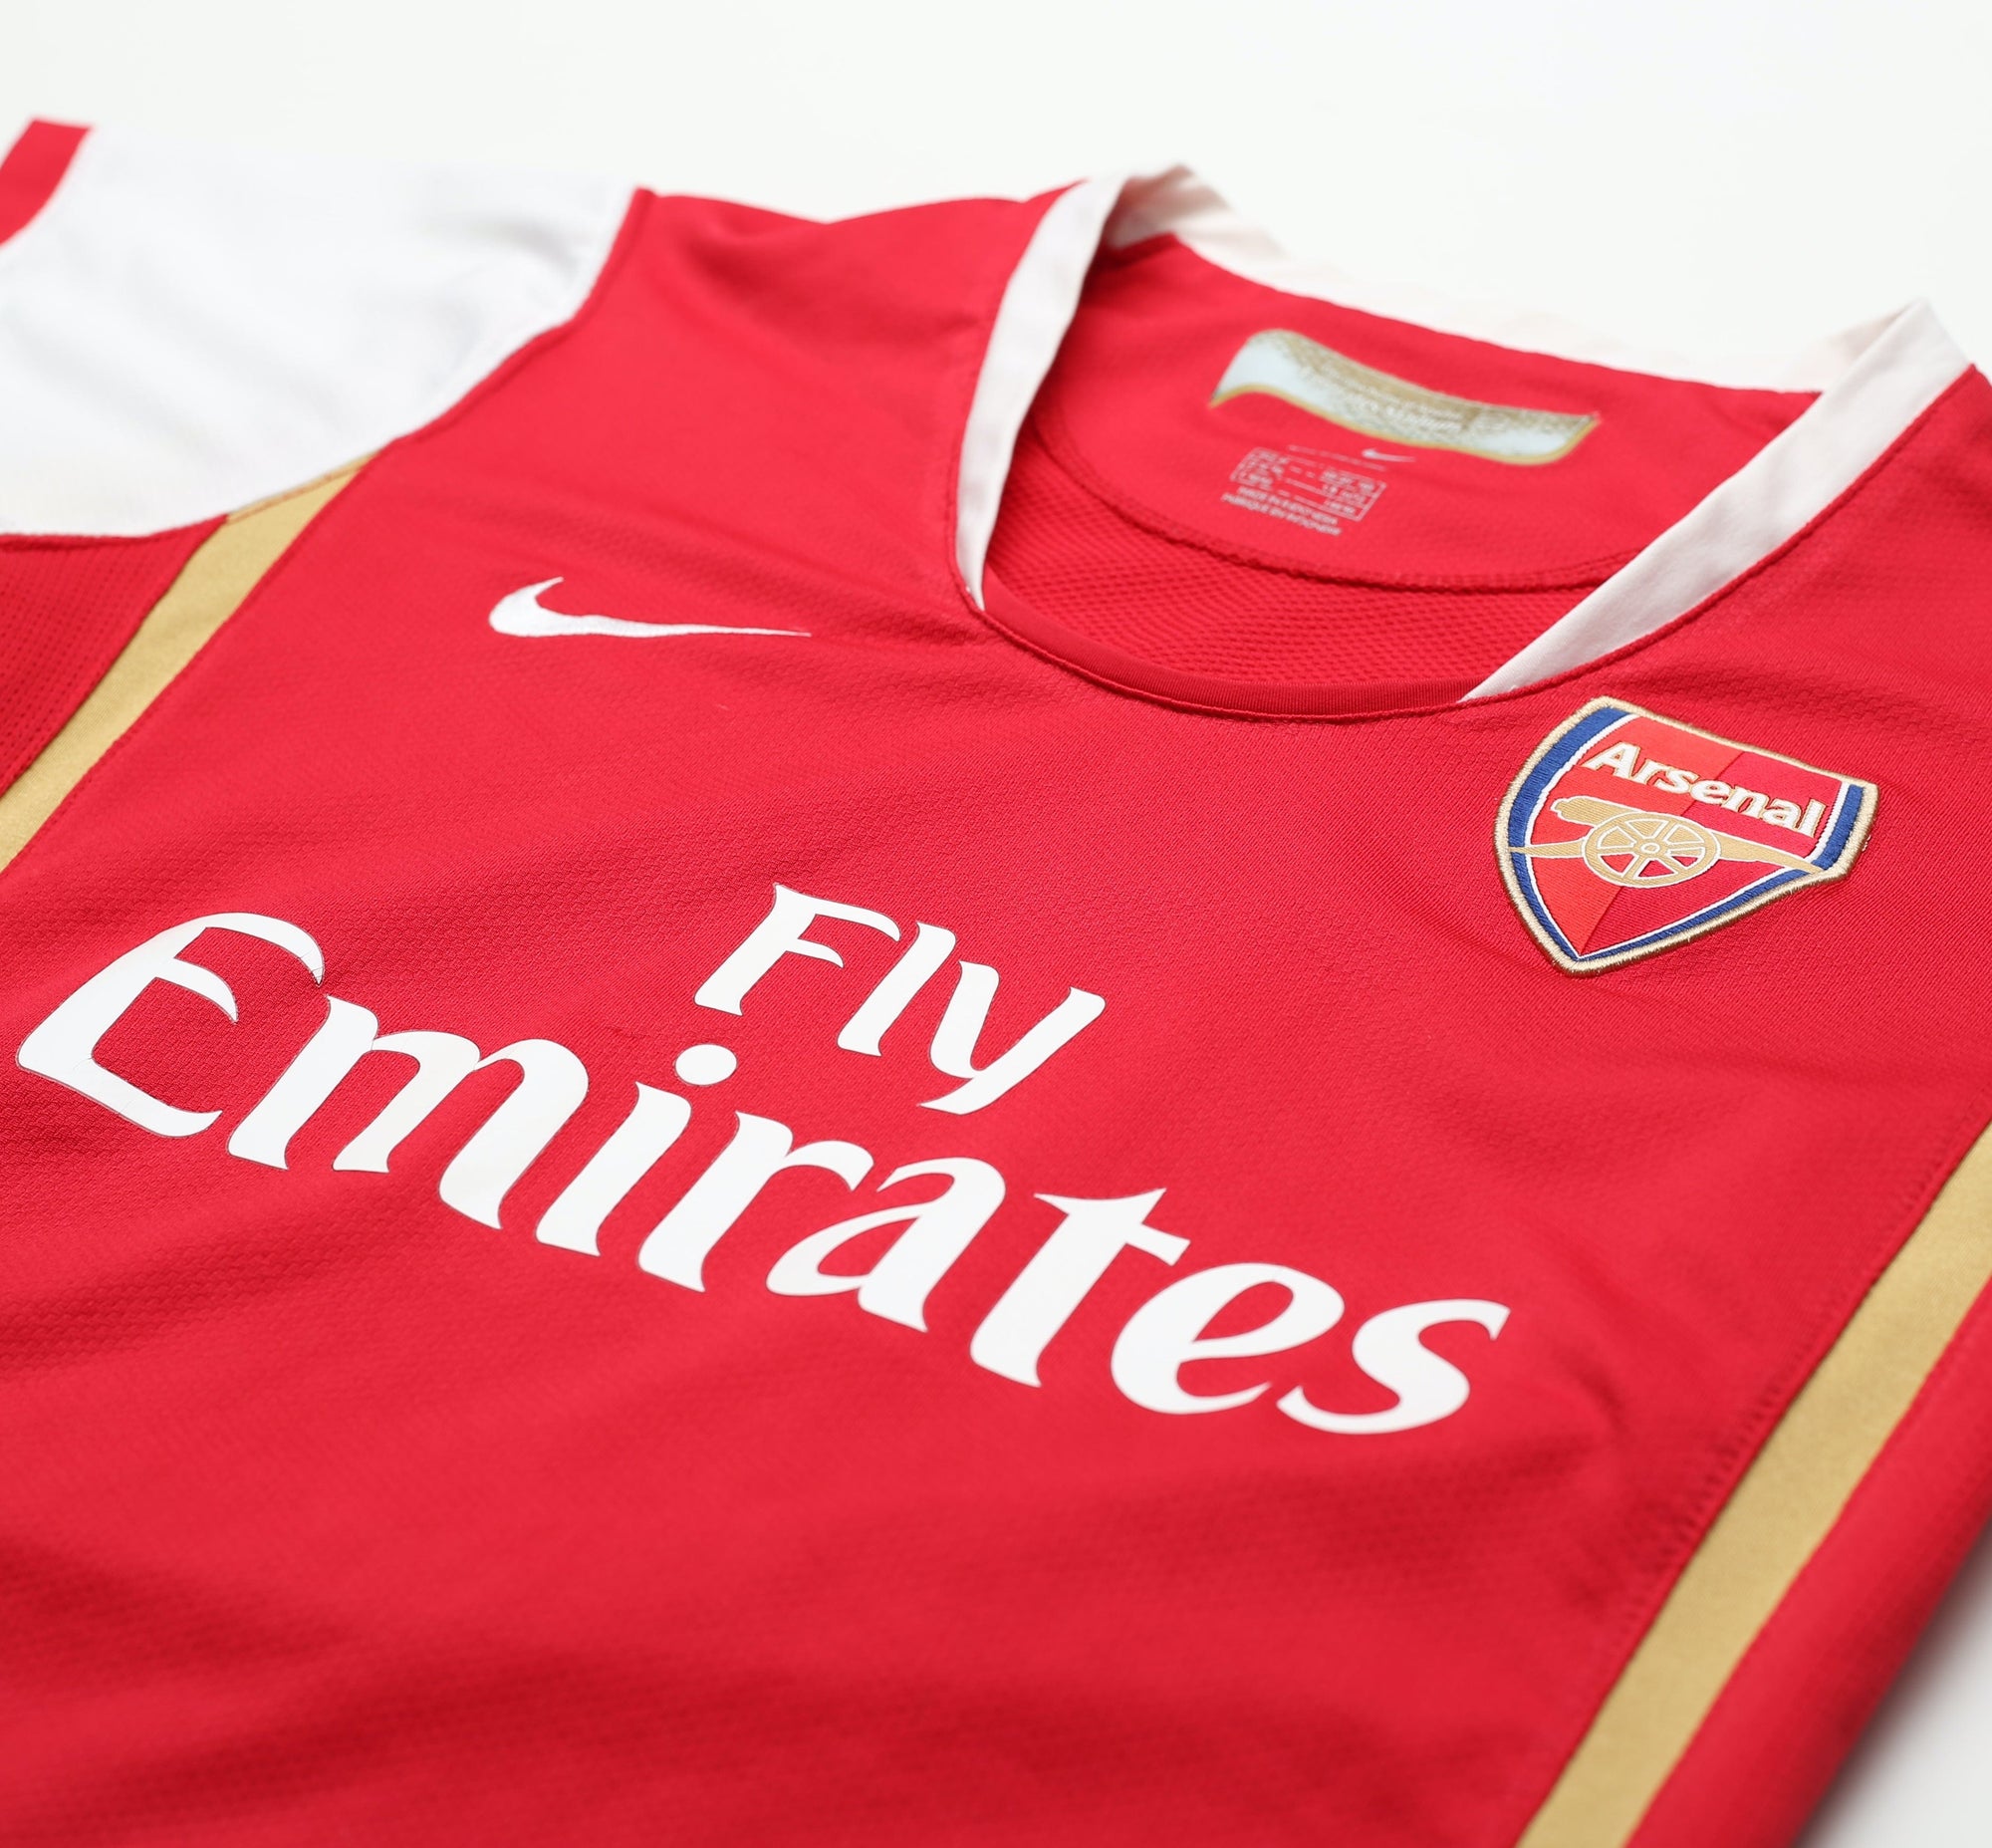 2007 / 2008 - Arsenal (M)